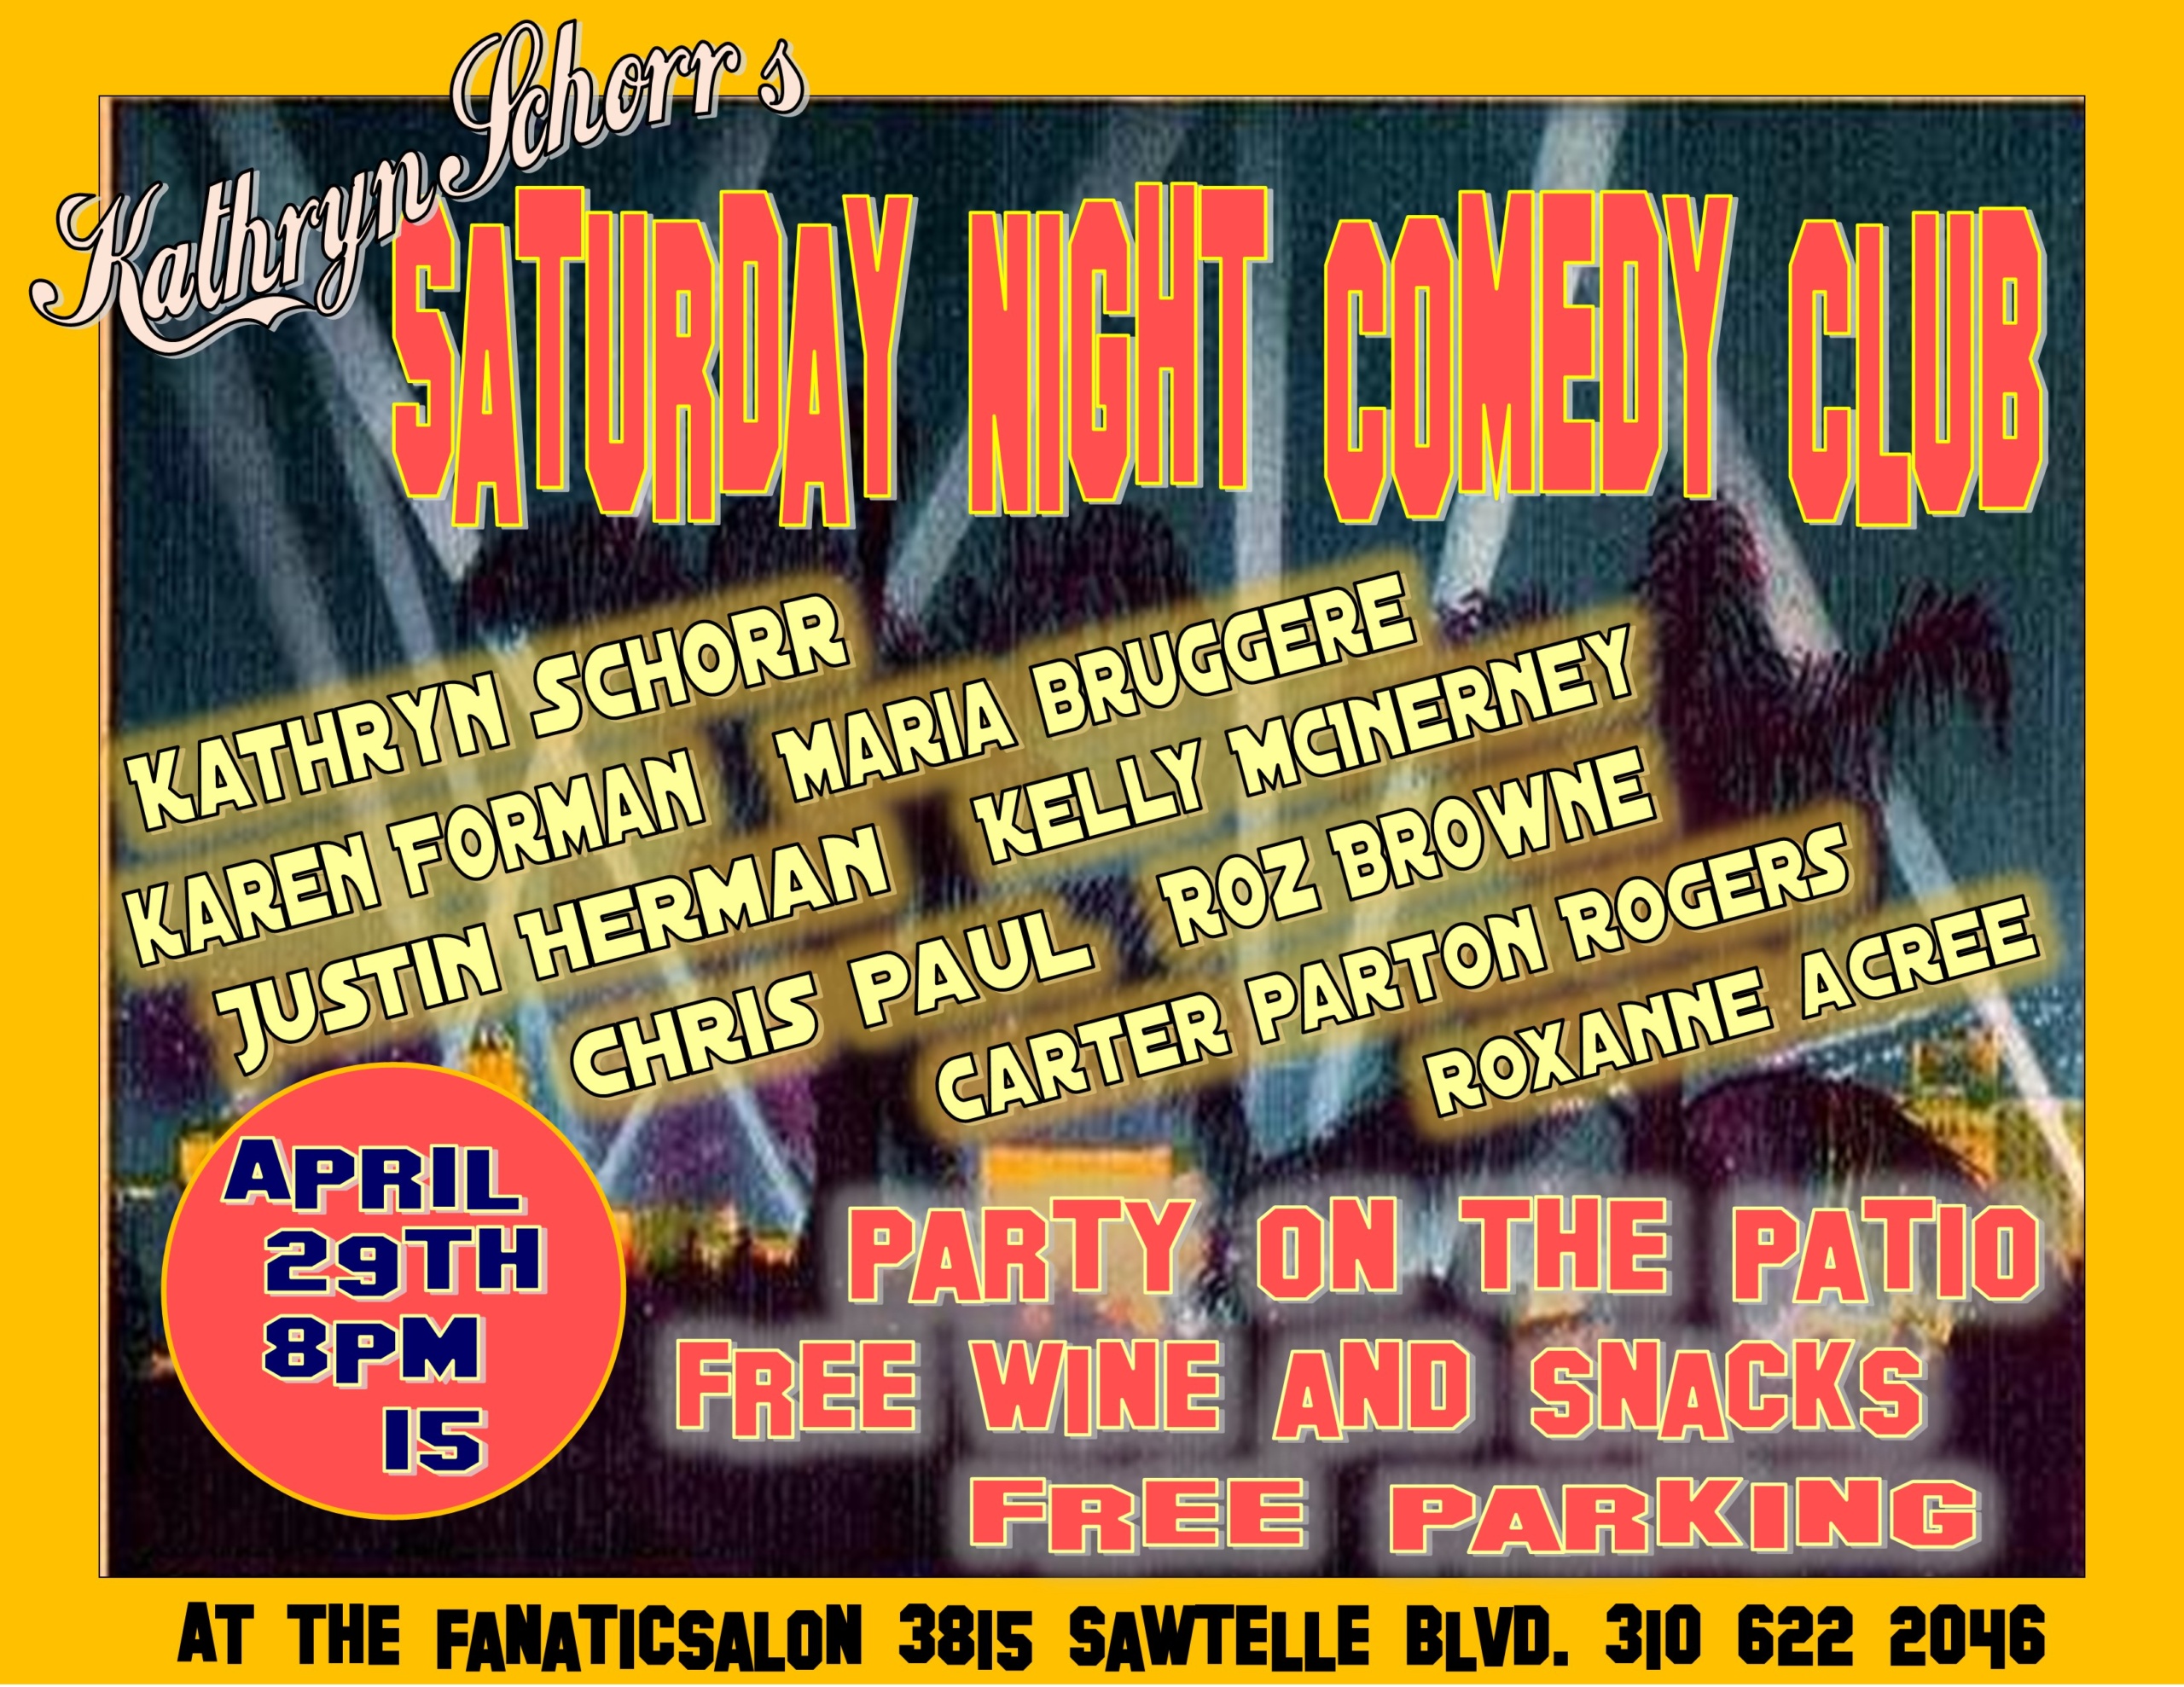 Kathryn Schorr Saturday Night Comedy Club, fanatic salon, culver city